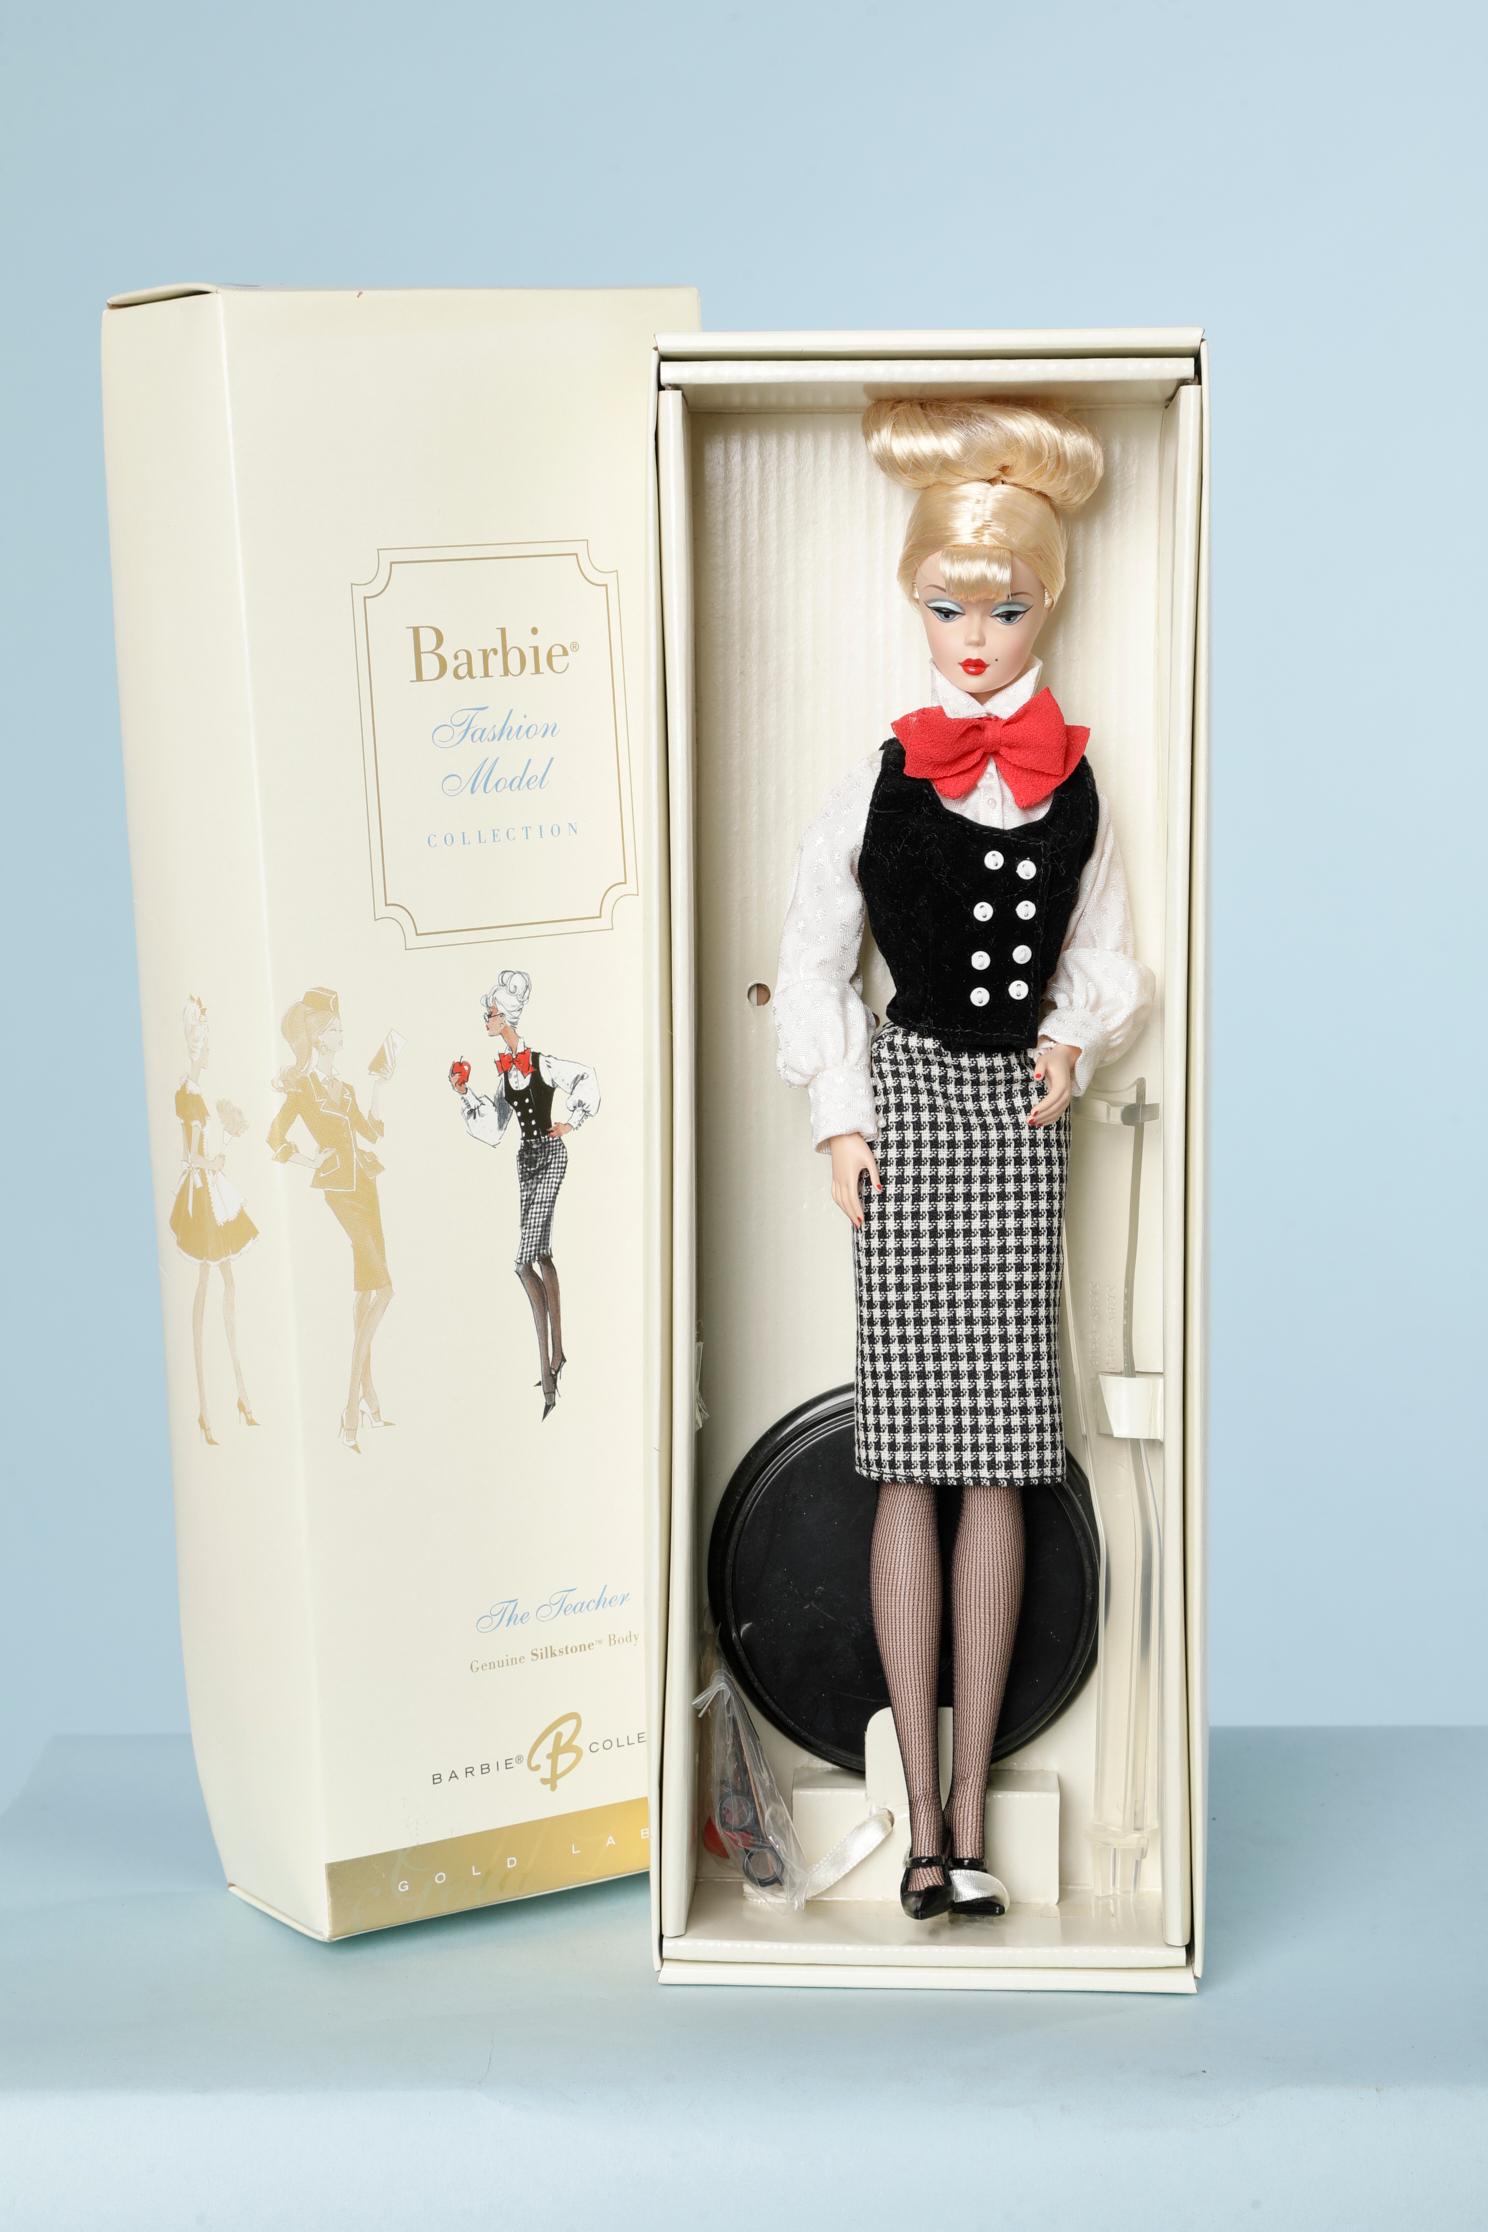 Barbie Fashion Model/ Gold Label / The Teacher.
Echtheitszertifikat und Sammlerkarte. 